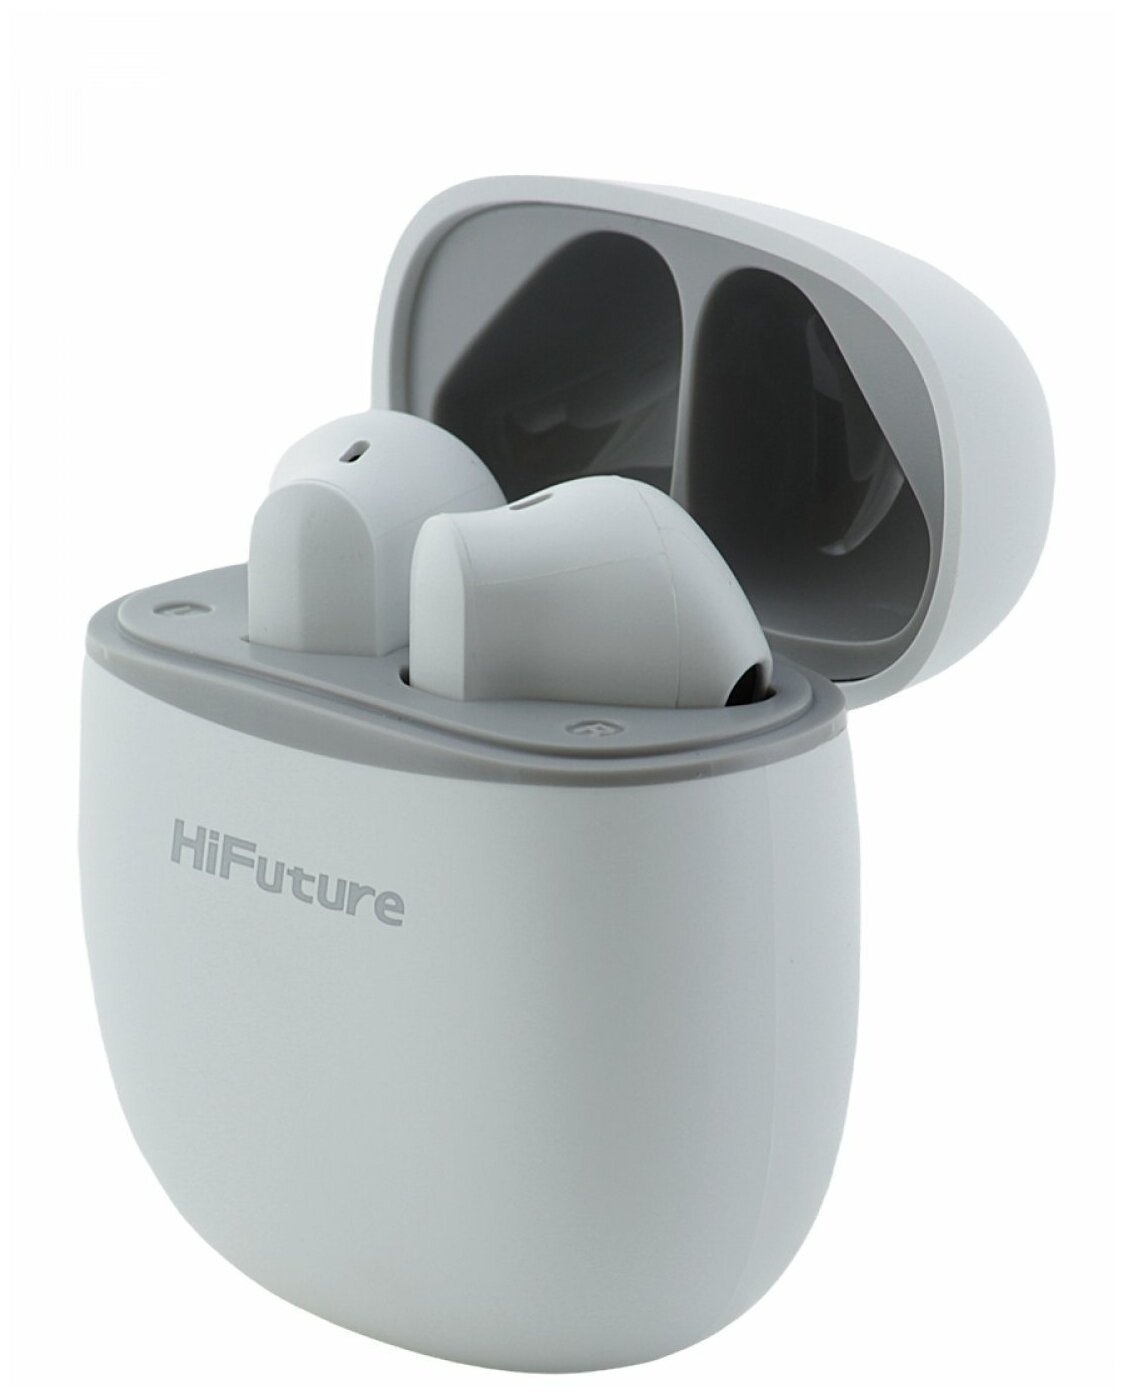 Беспроводные bluetooth наушники HiFuture TWS ColorBuds White, блютуз гарнитура с микрофоном, наушники для iPhone/Android с зарядным футляром/кейсом